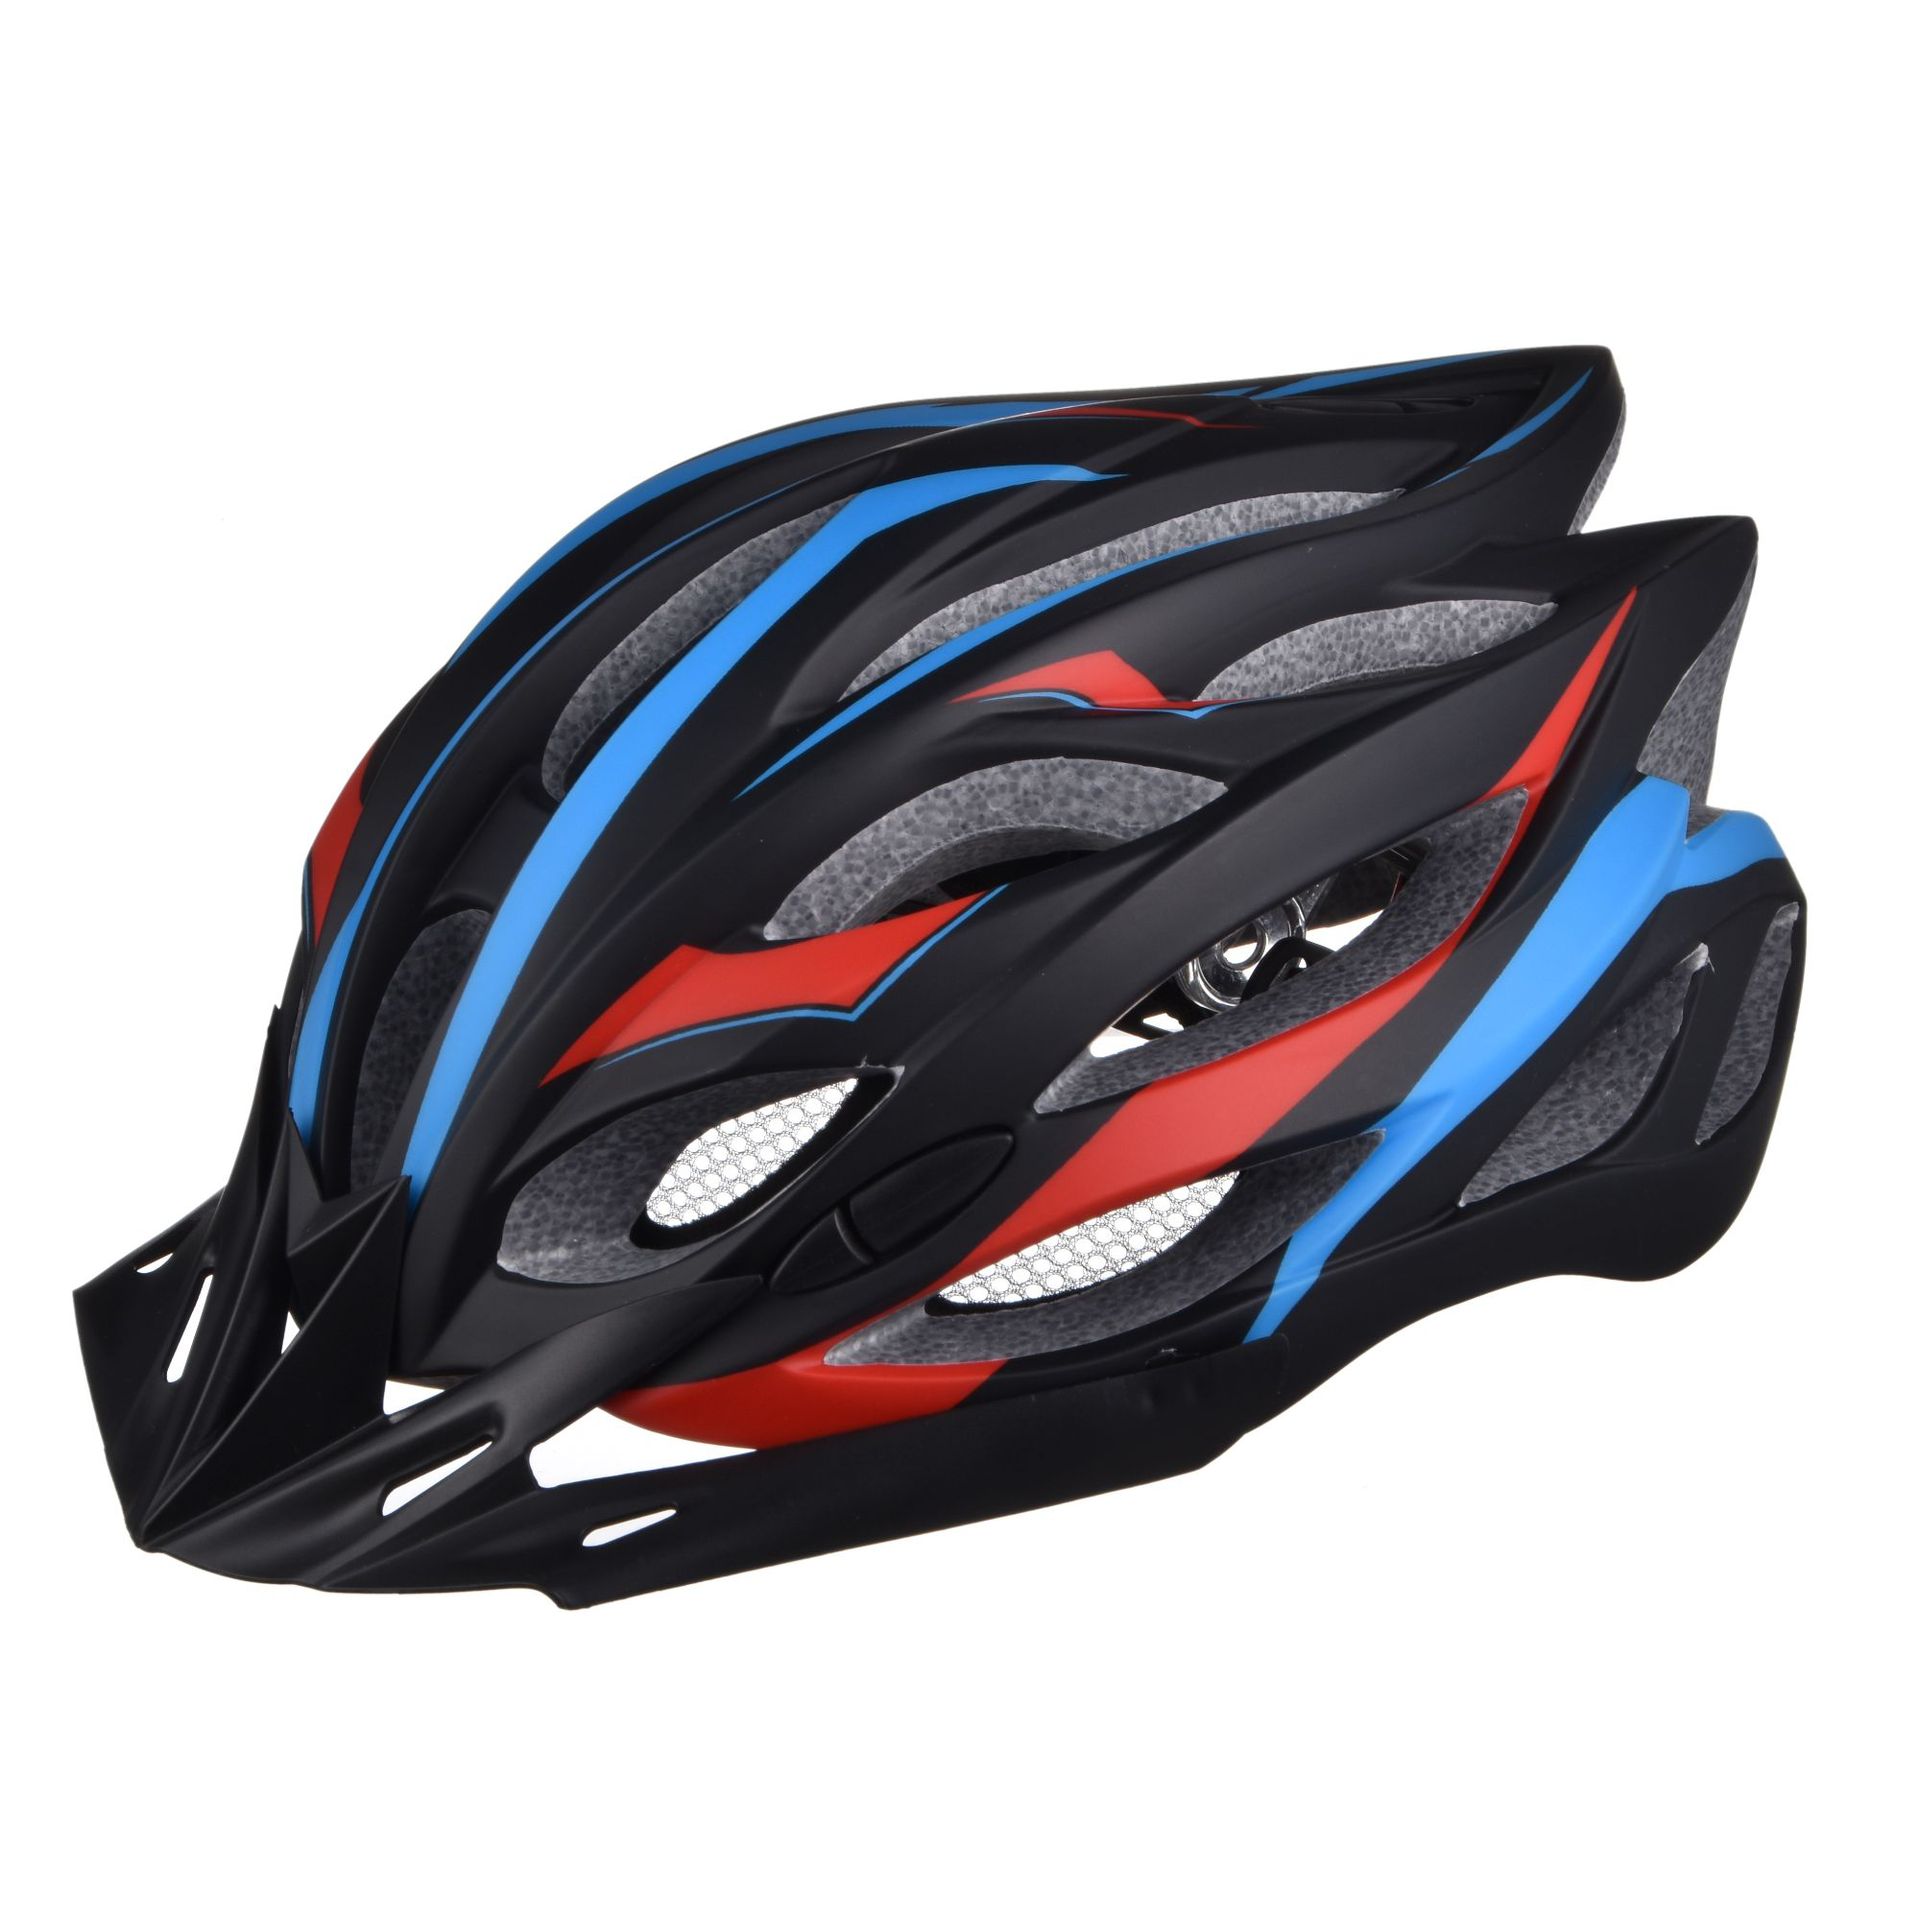 LED灯式頭盔 自行车帽 自行车山地车骑行头盔 一体成型7